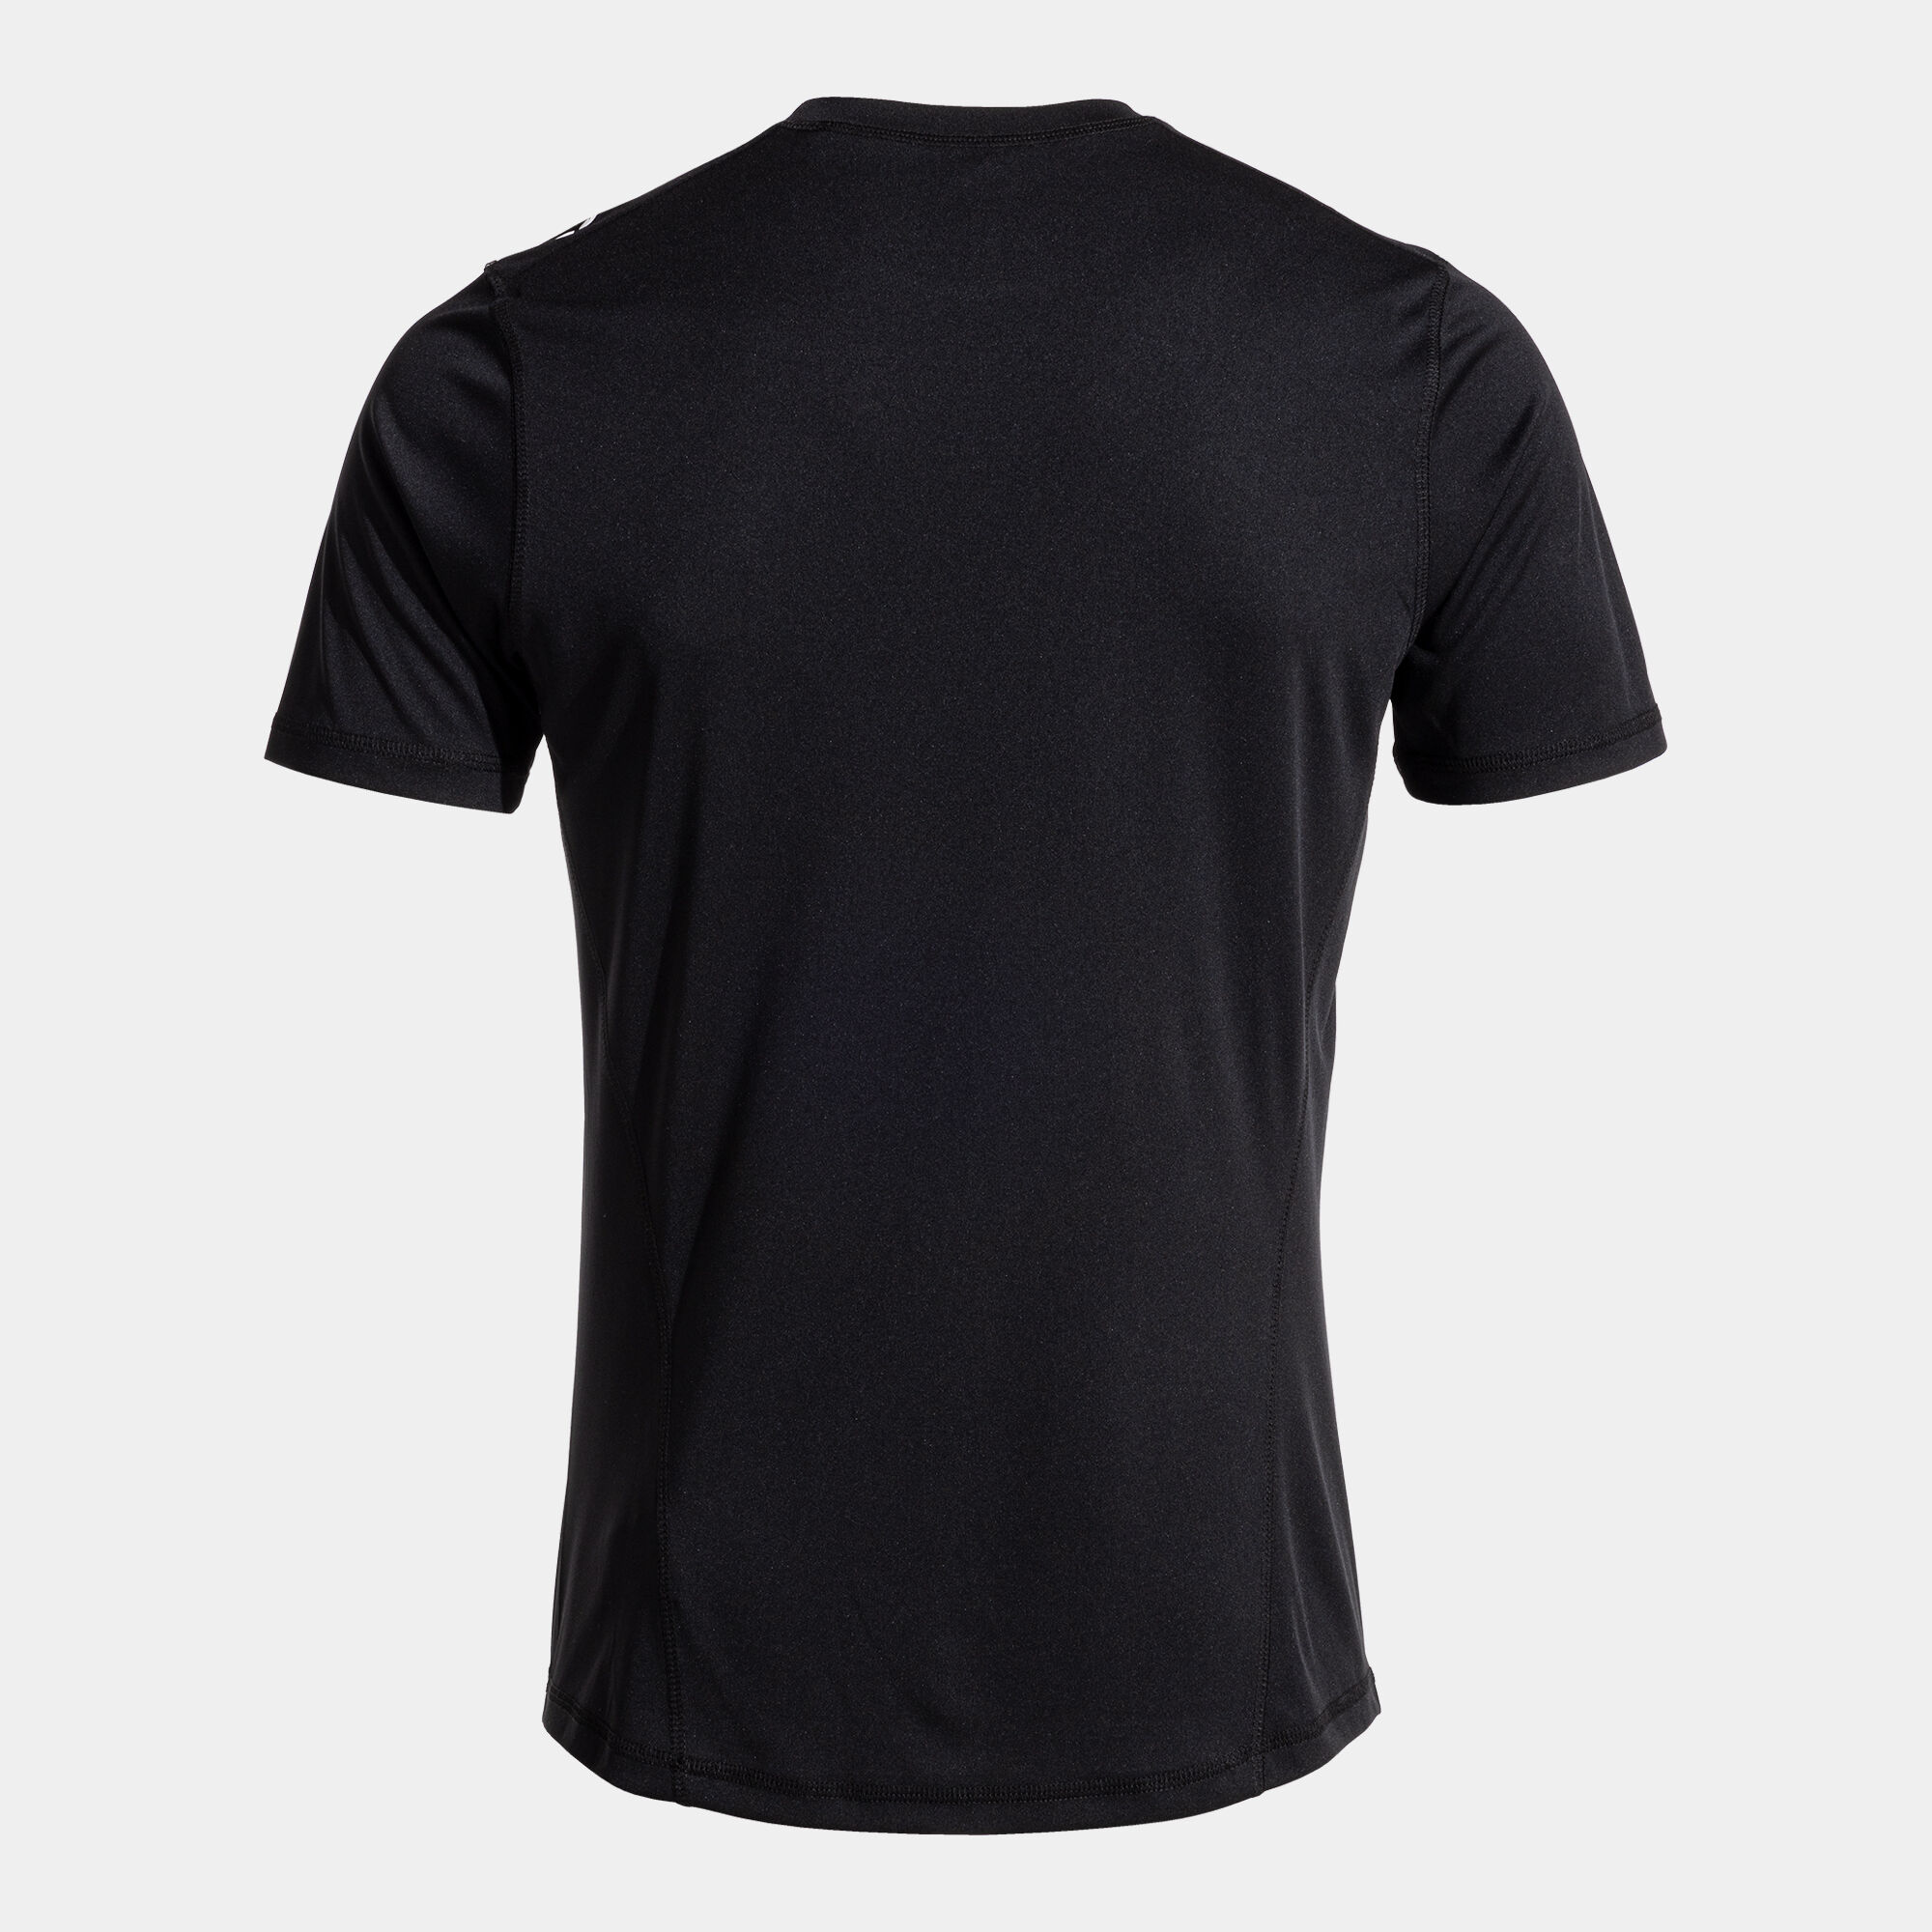 Camiseta manga corta hombre Olimpiada handball negro